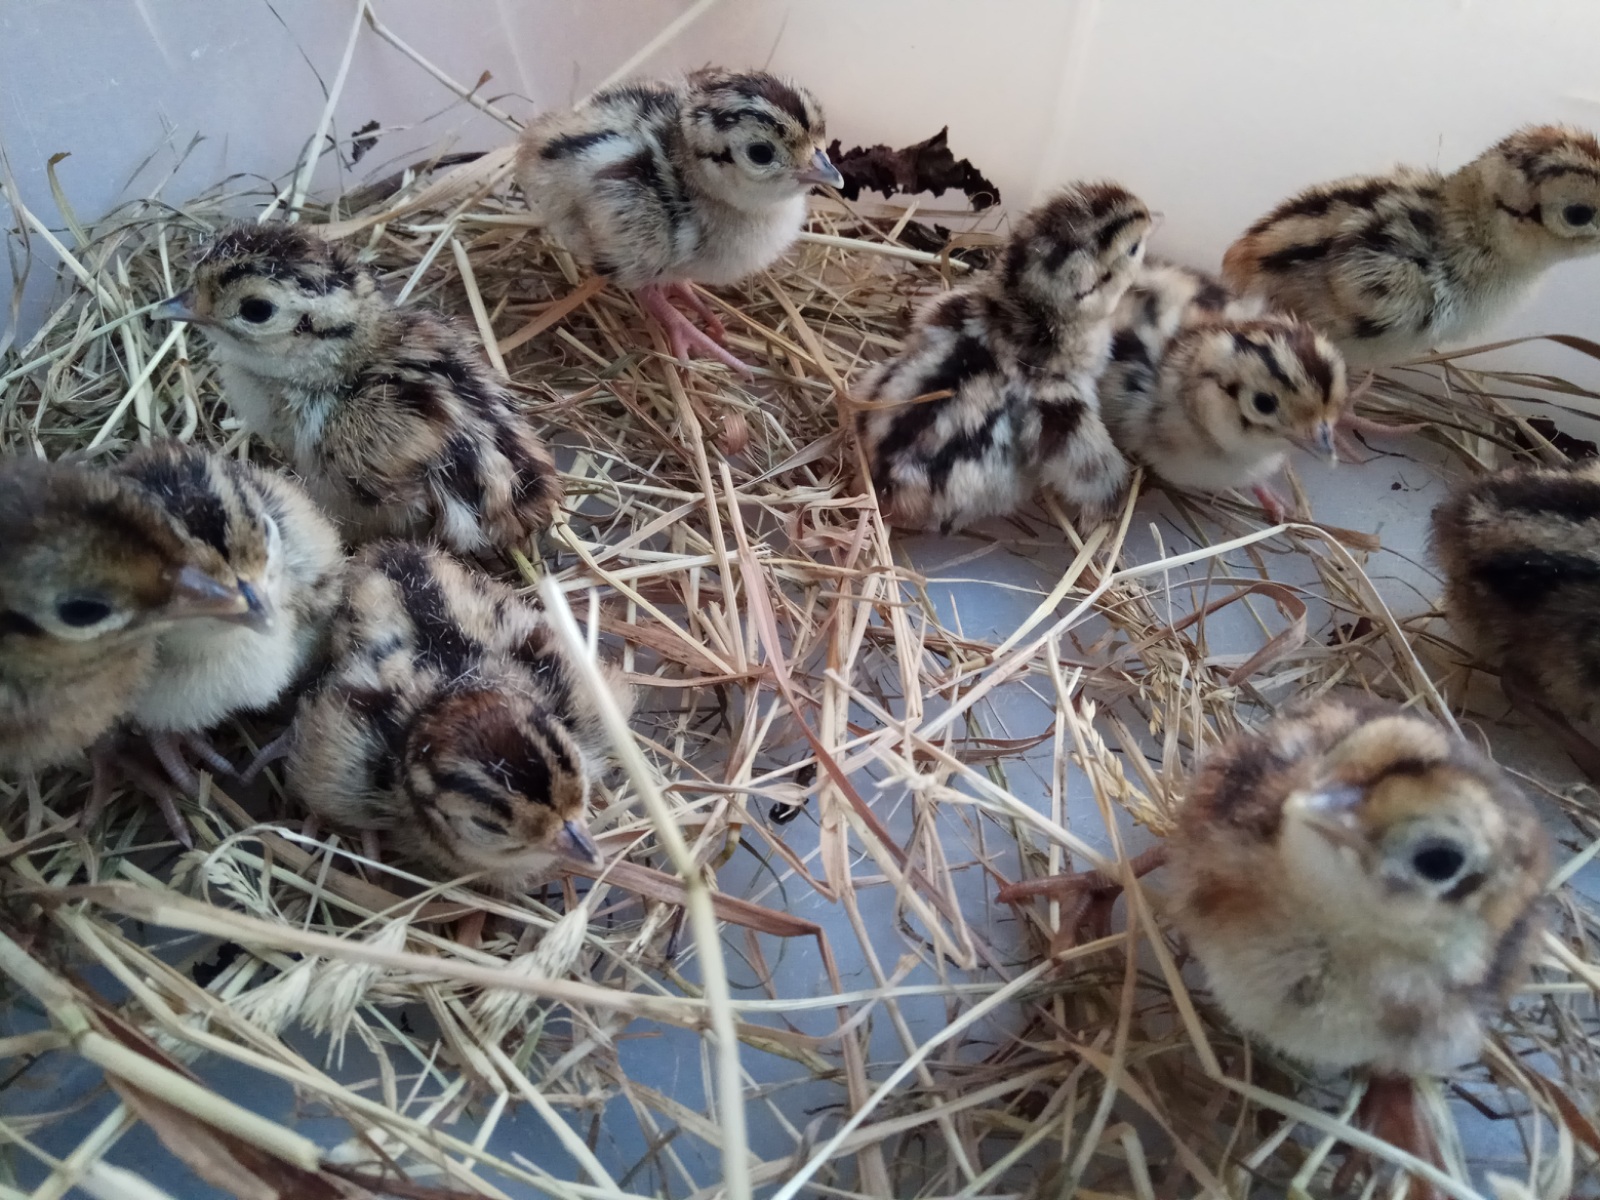 Инкубация фазанов в домашних условиях